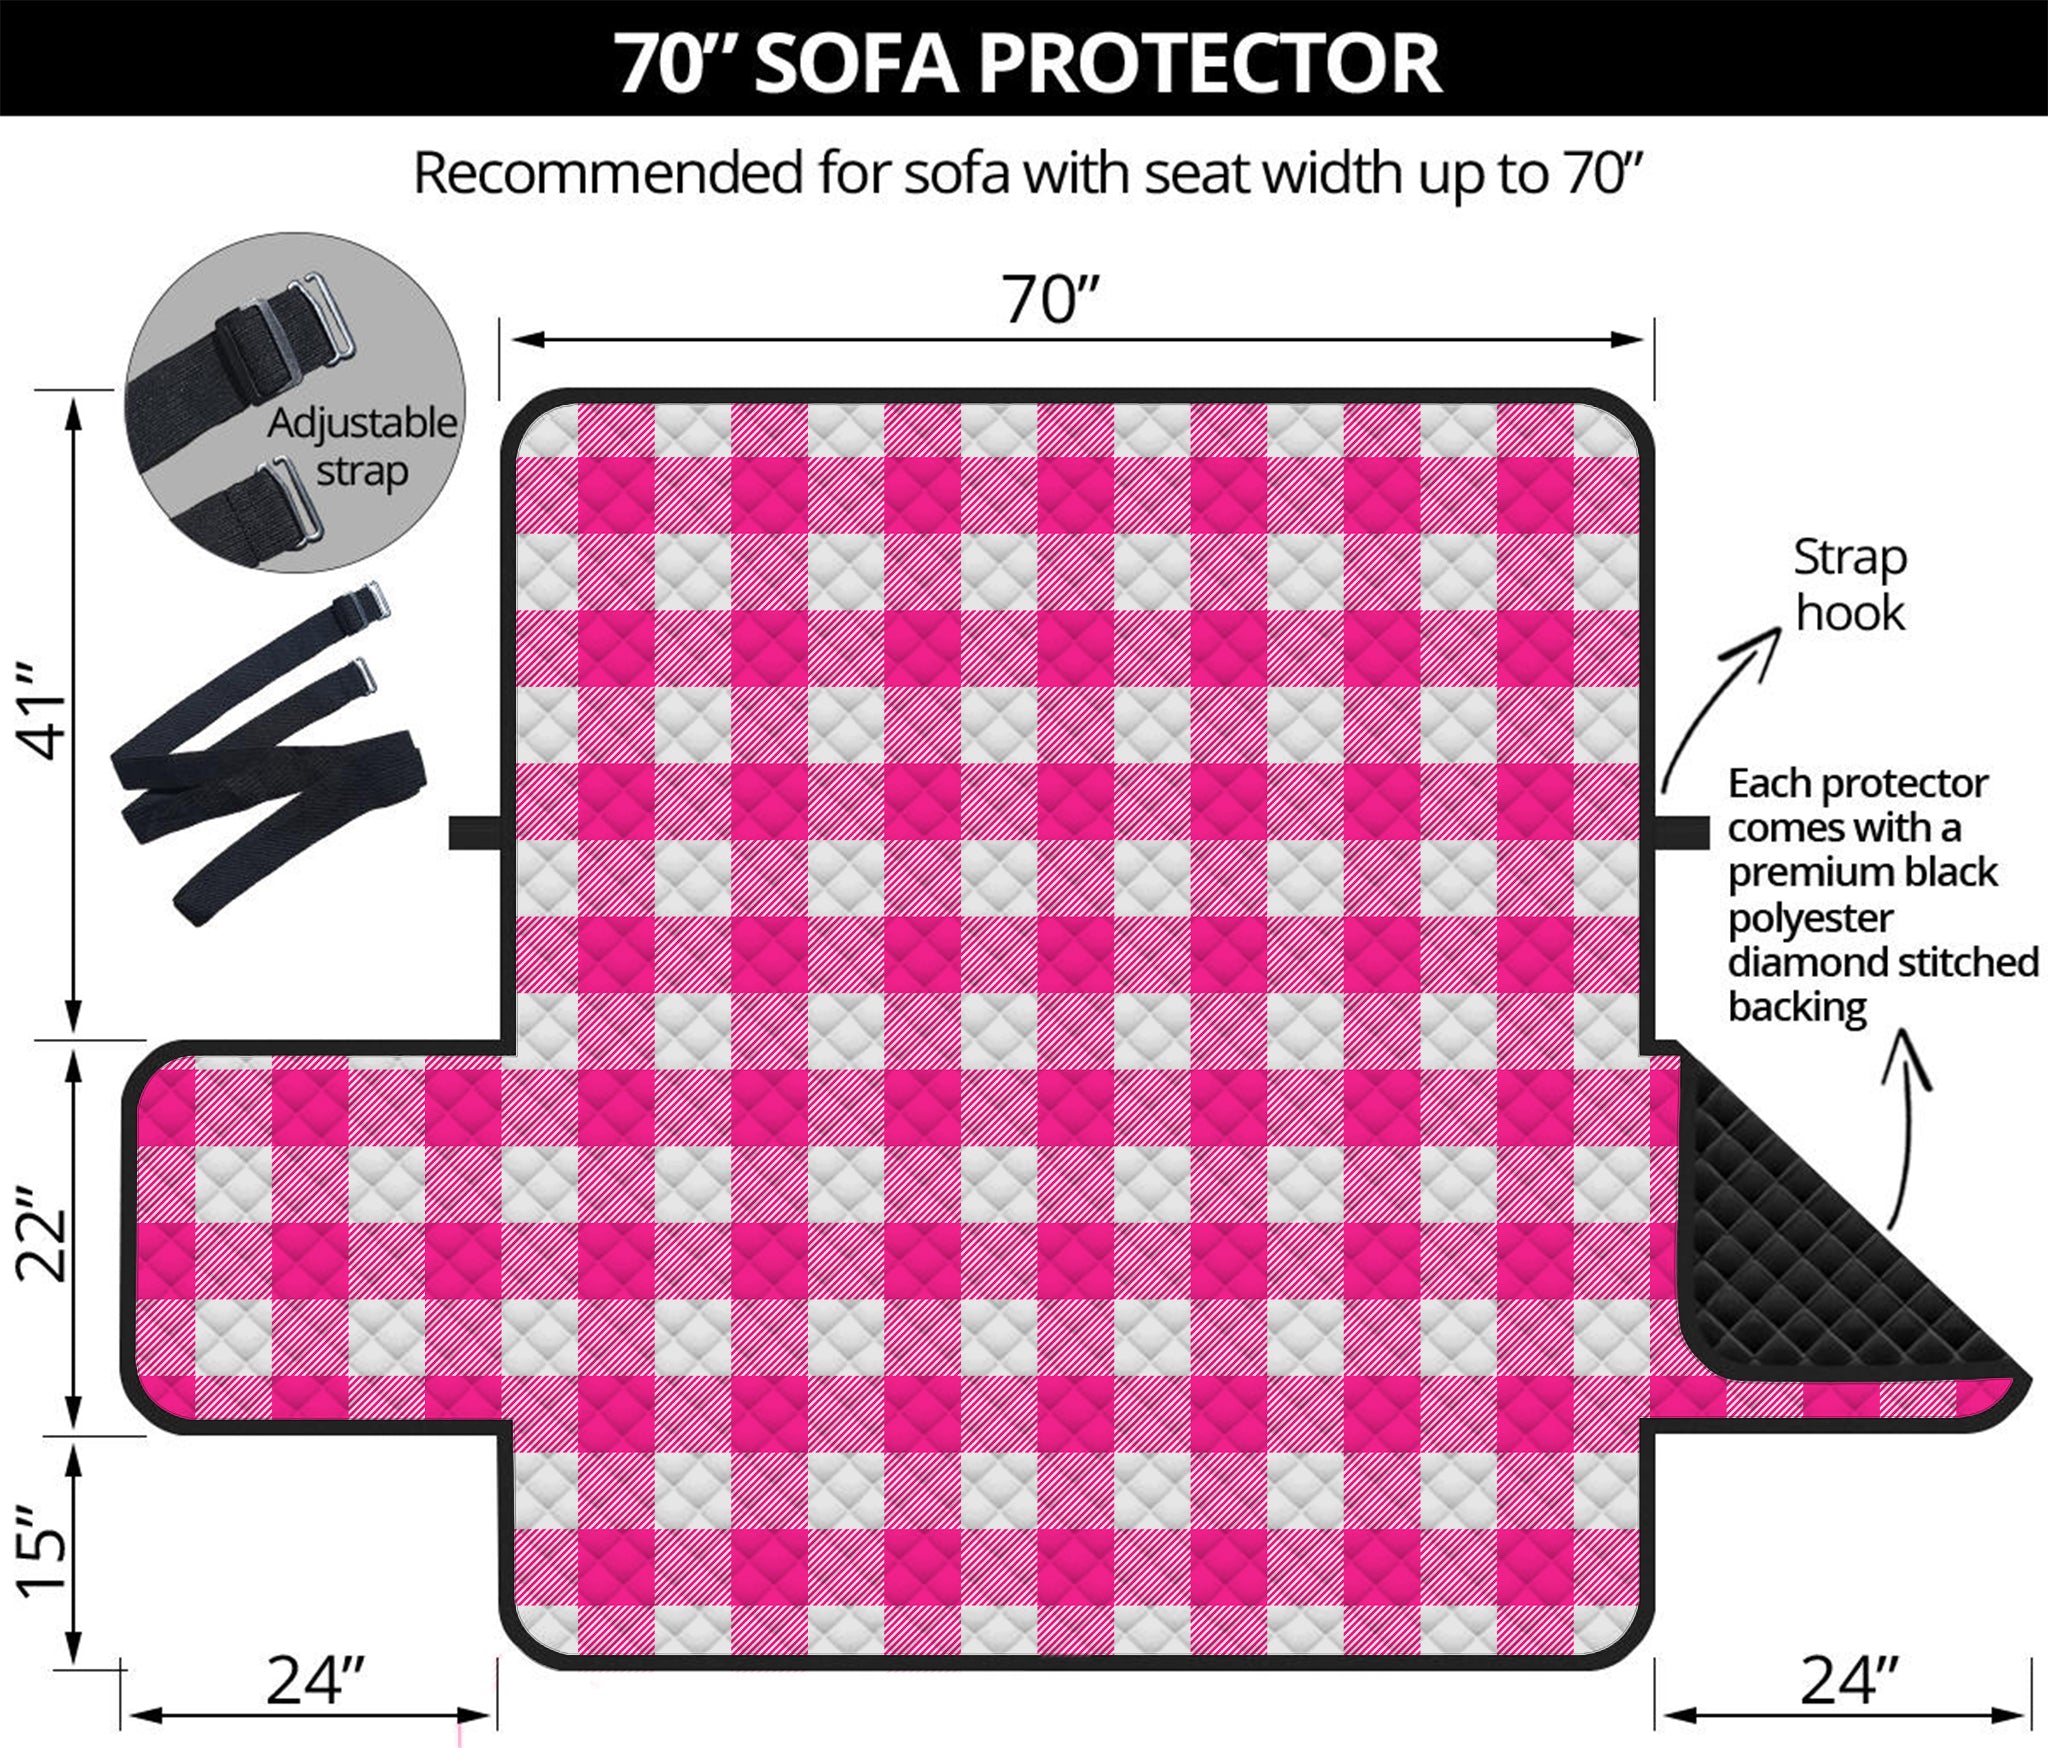 Hot Pink And White Buffalo Check Print Sofa Protector